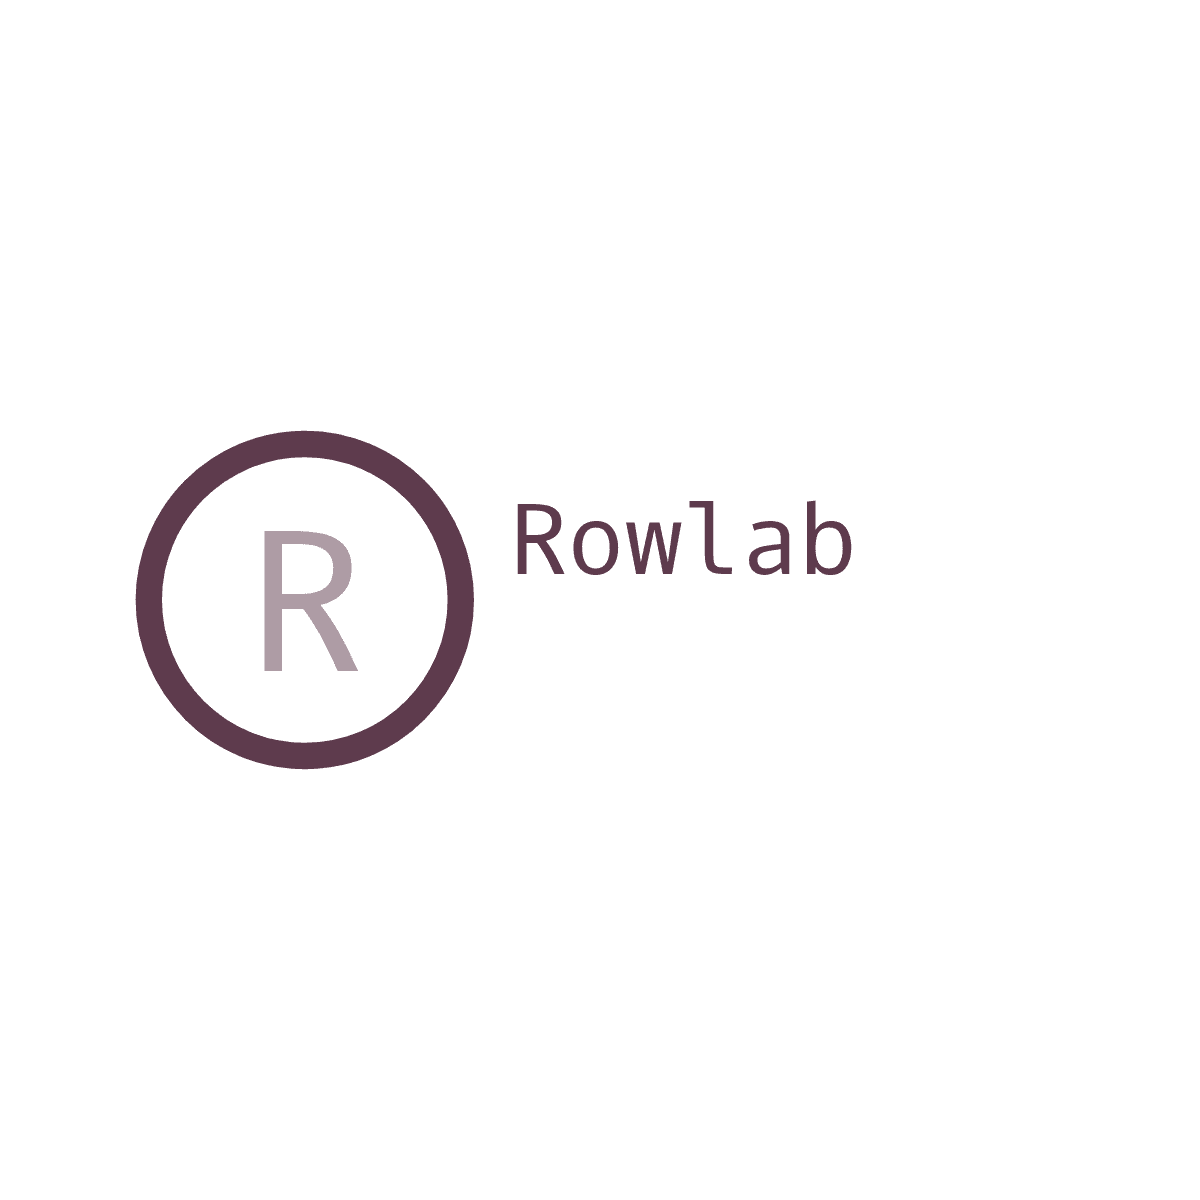 Rowlab